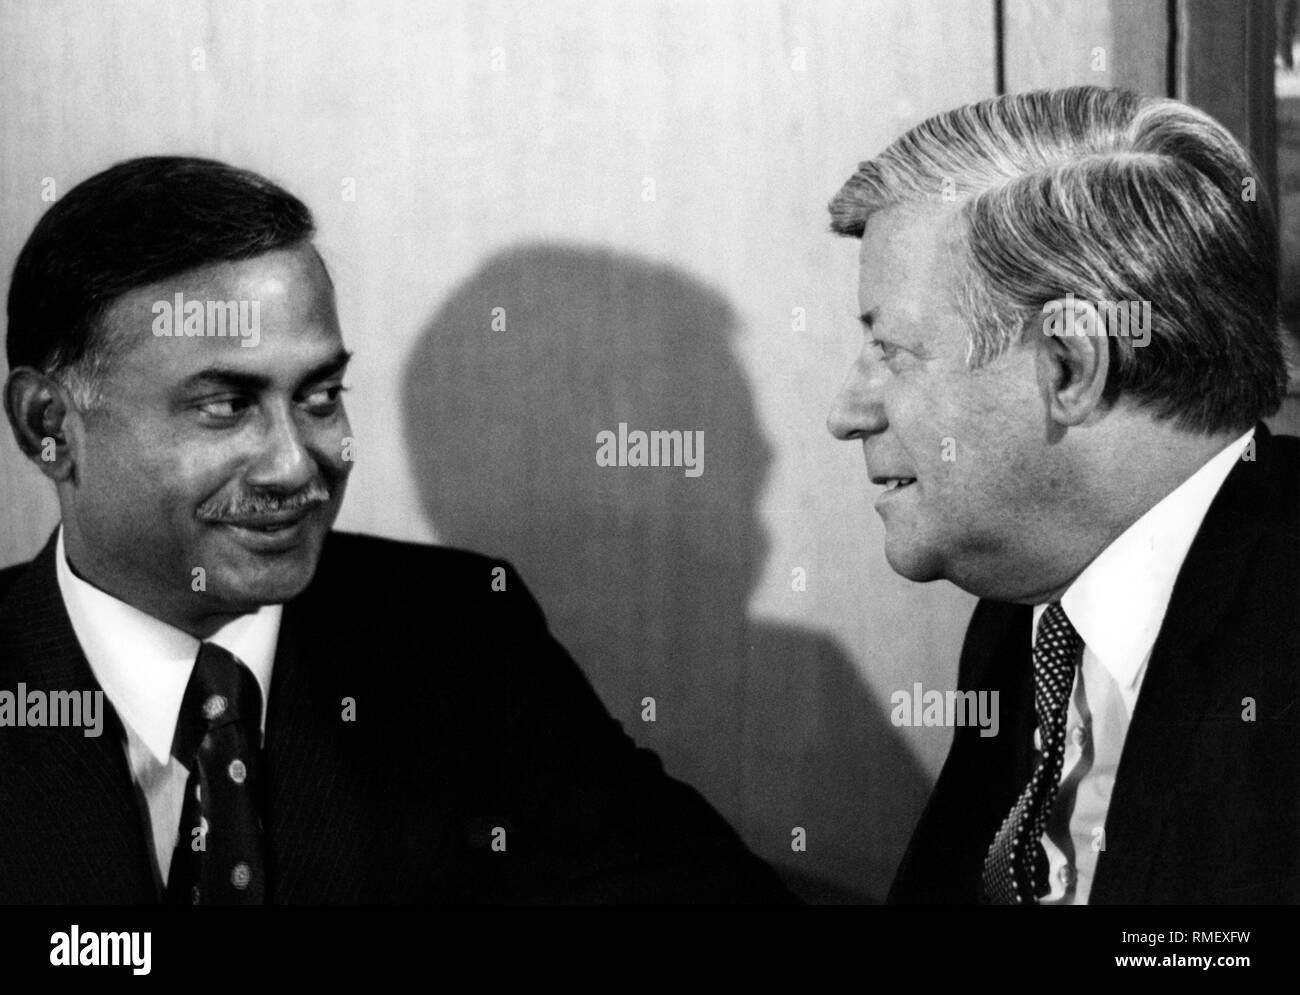 Le président du Bangladesh Ziaur Rahman parle à cancellor allemand Helmut Schmidt lors d'une visite à Bonn. Banque D'Images